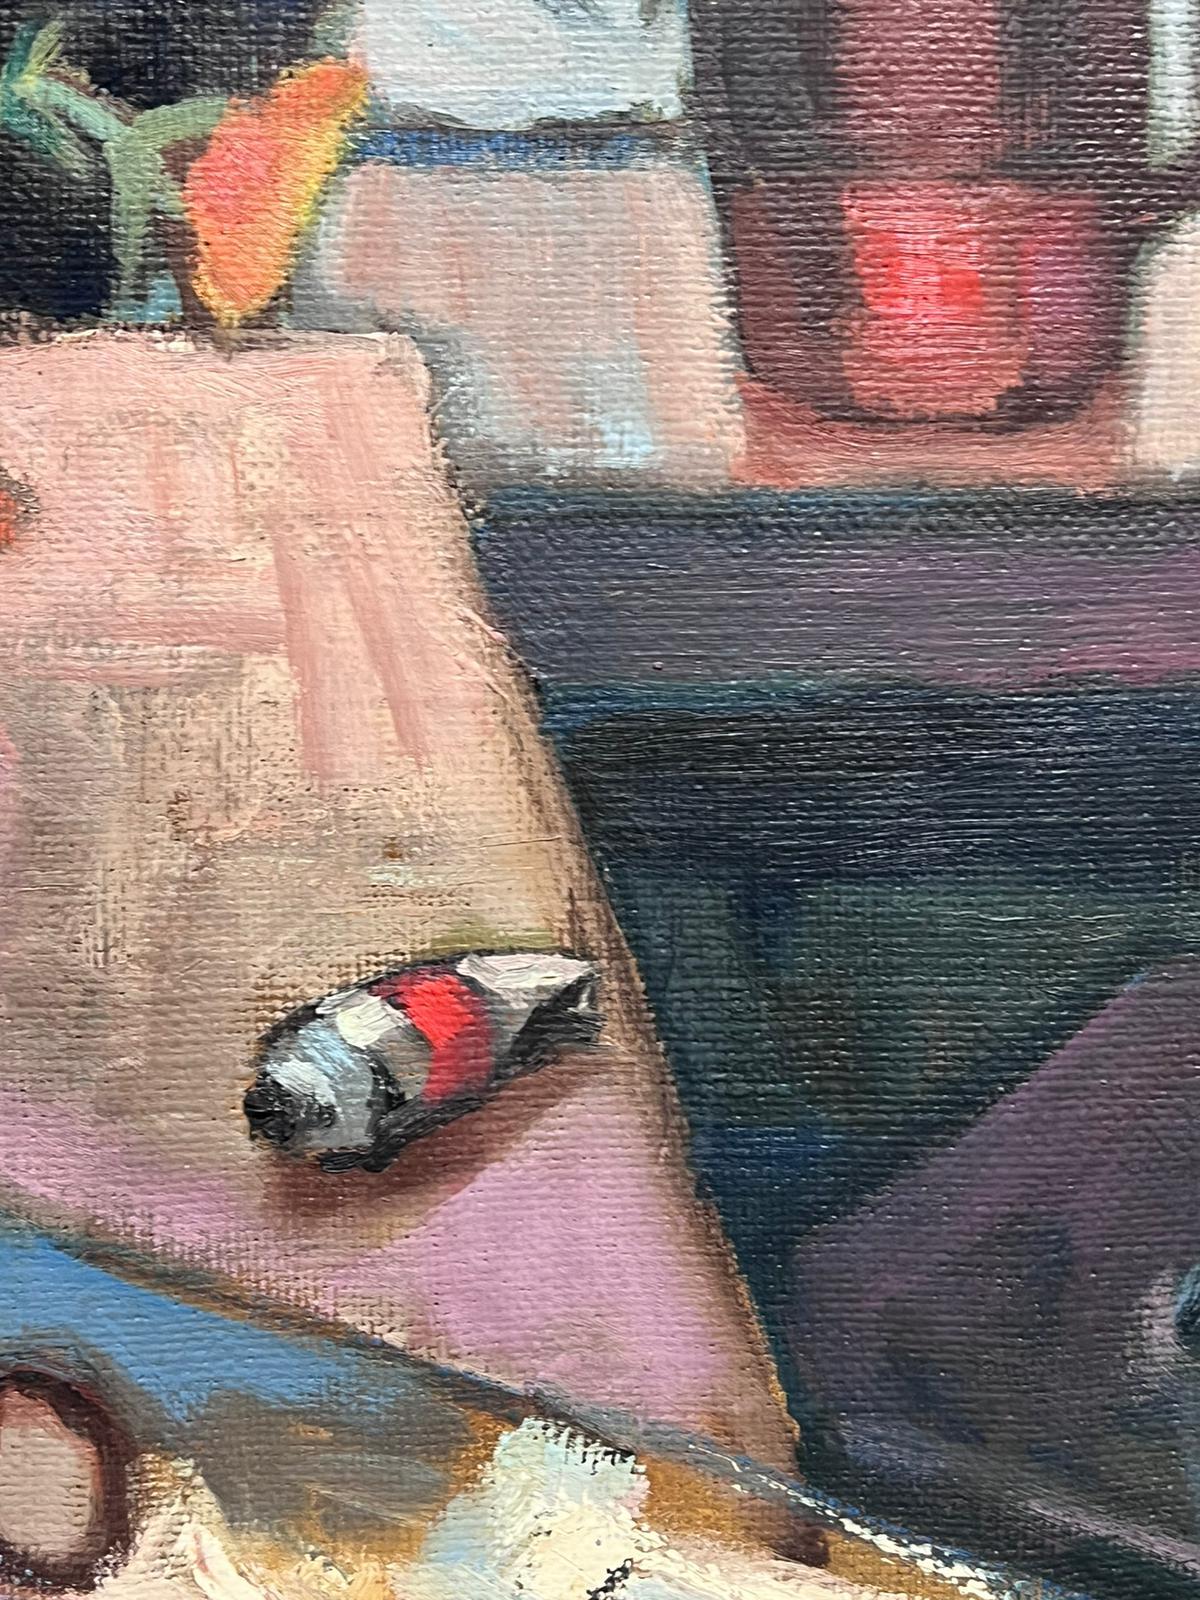 L'intérieur du studio de l'Artistics
Post-impressionniste français, première moitié du 20e siècle
huile sur toile, non encadrée
toile : 29 x 20 pouces
provenance : collection privée
état : très bon et sain